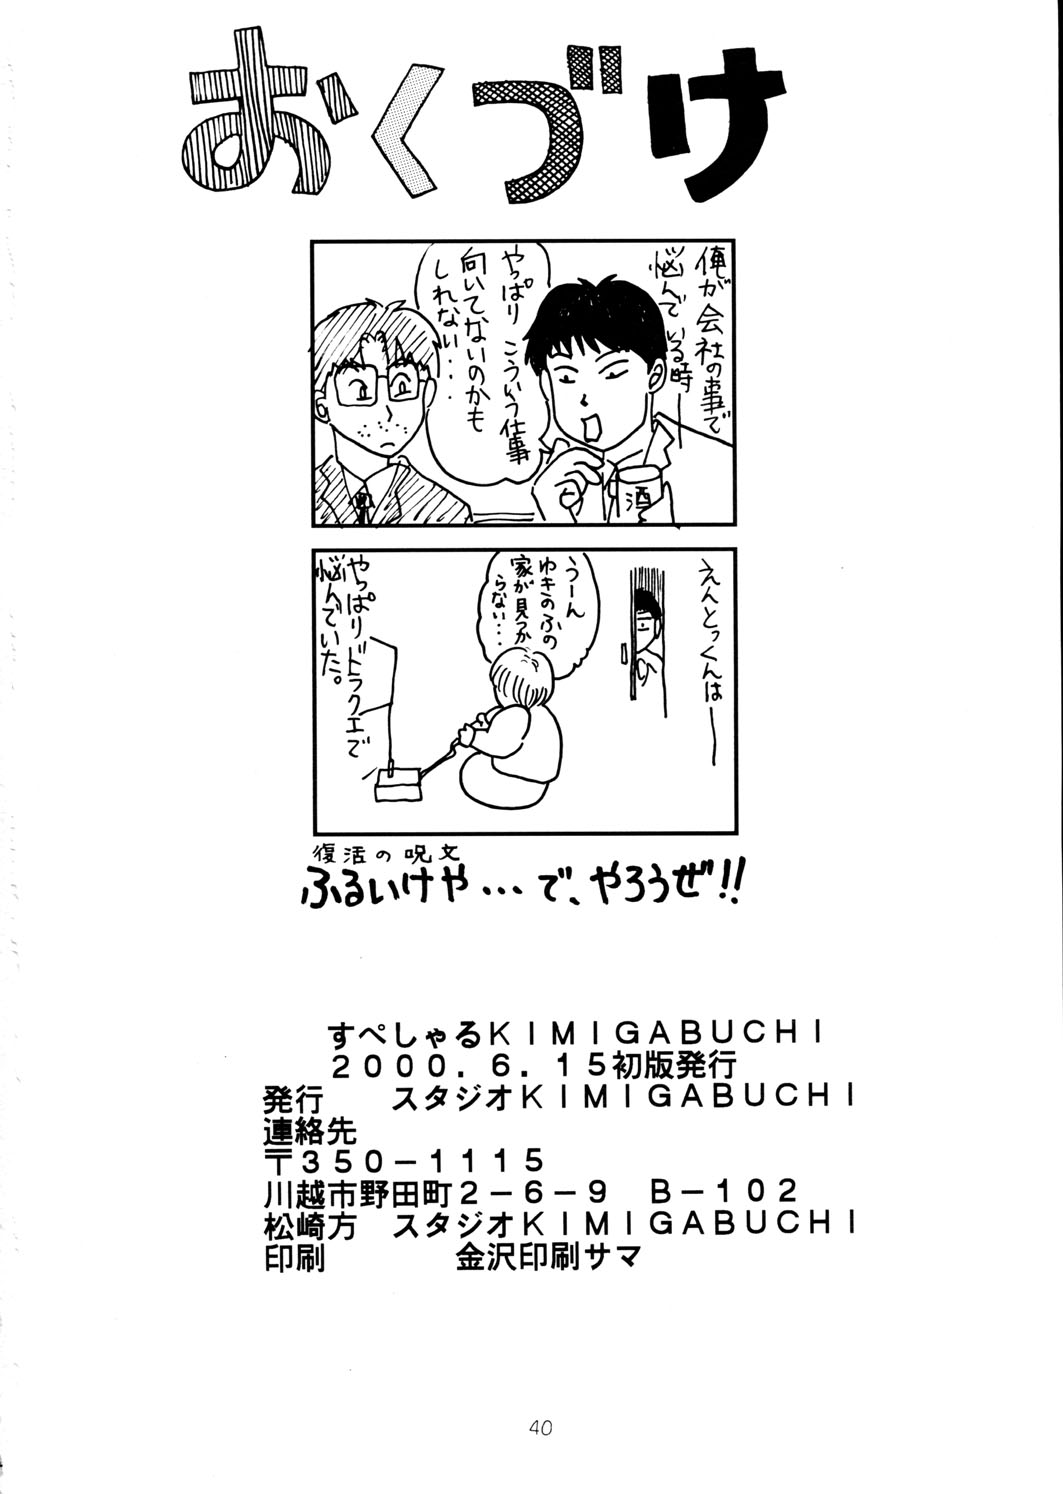 [スタジオKIMIGABUCHI (えんとっくん)] すぺしゃる KIMIGABUCHI 2000年 SUMMER PROTOTYPE (ラブひな、ケロロ軍曹)